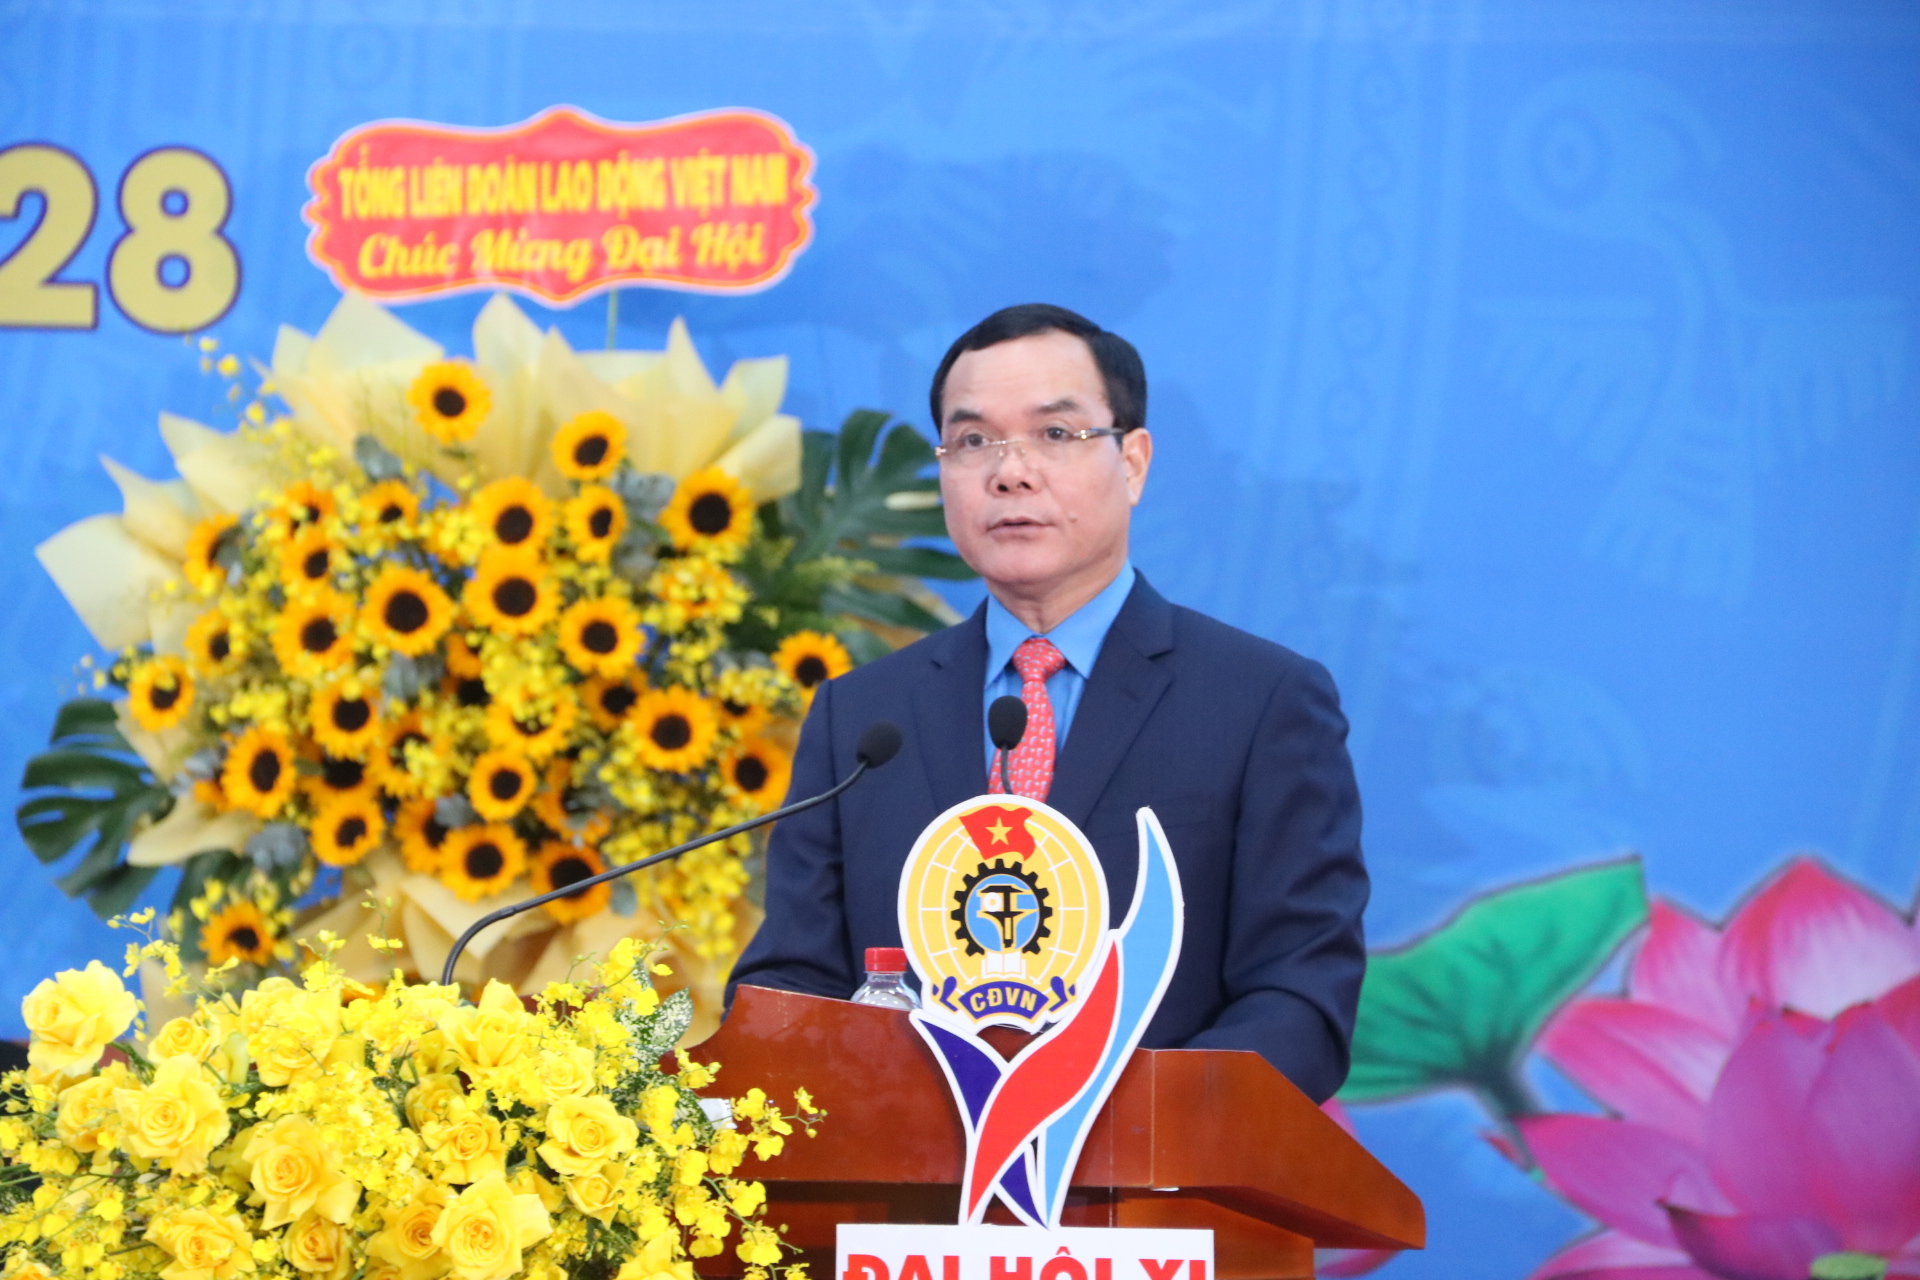 Chủ tịch Tổng Liên đoàn Lao động Việt Nam đặt ra 5 nhiệm vụ cho Công đoàn Bình Phước